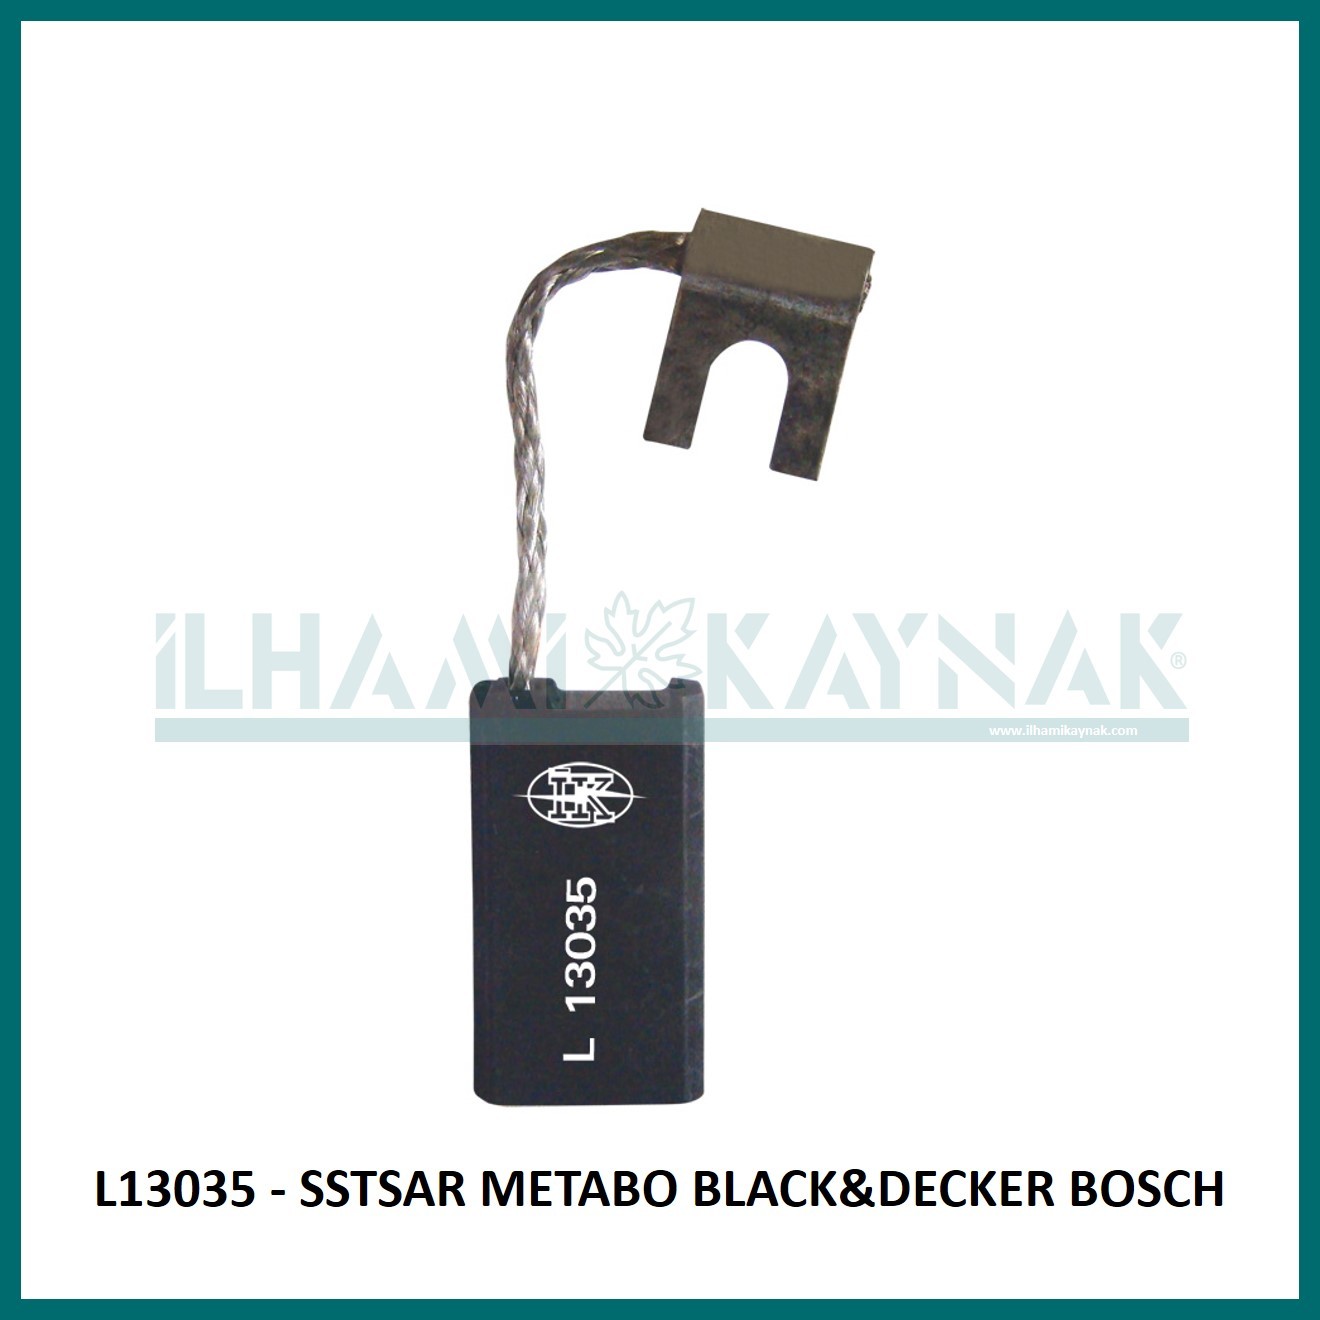 L13035 - SSTAR METABO BLACK&DECKER BOSCH - 6*12*22 mm - 100 Adet